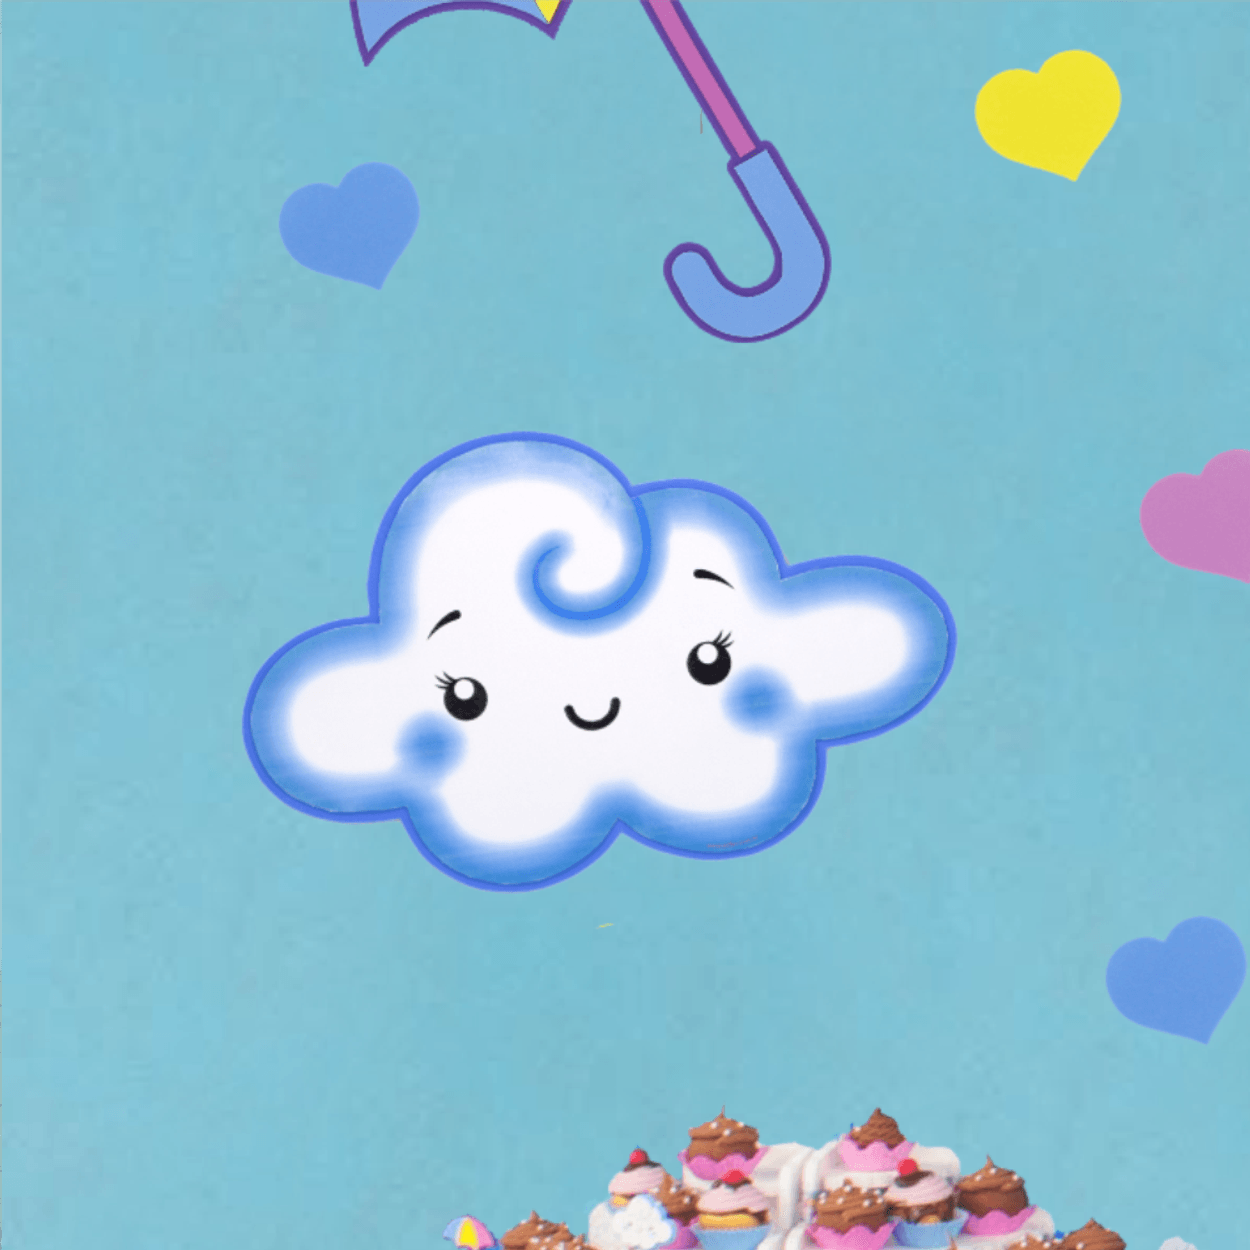 Chuva de amor: Nuvem pode servir como tema para festas criativas